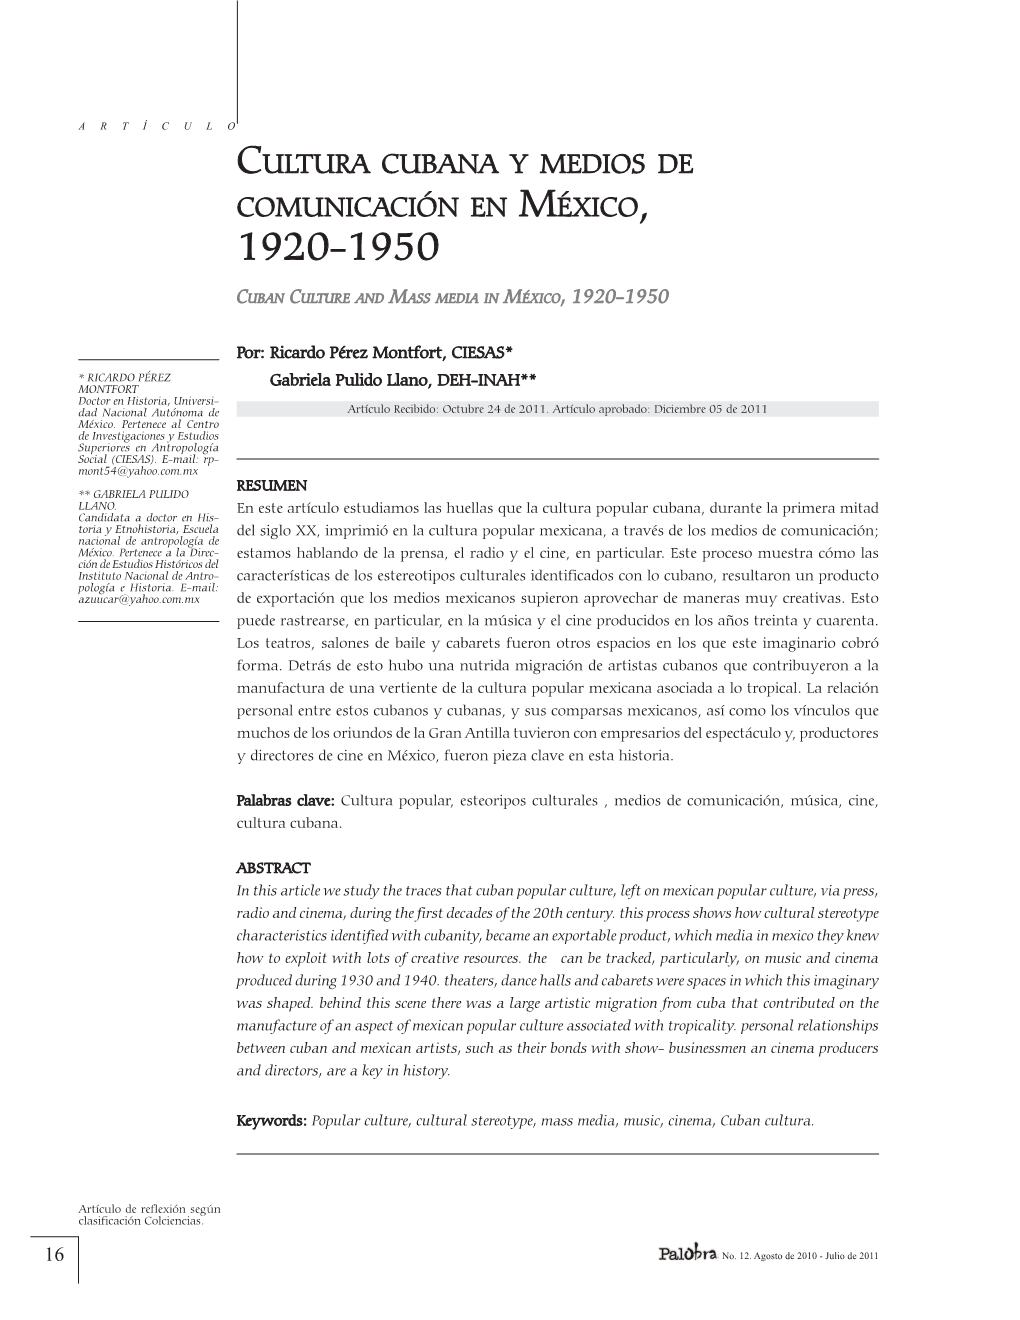 Cultura Cubana Y Medios De Comunicación En México, 1920-1950